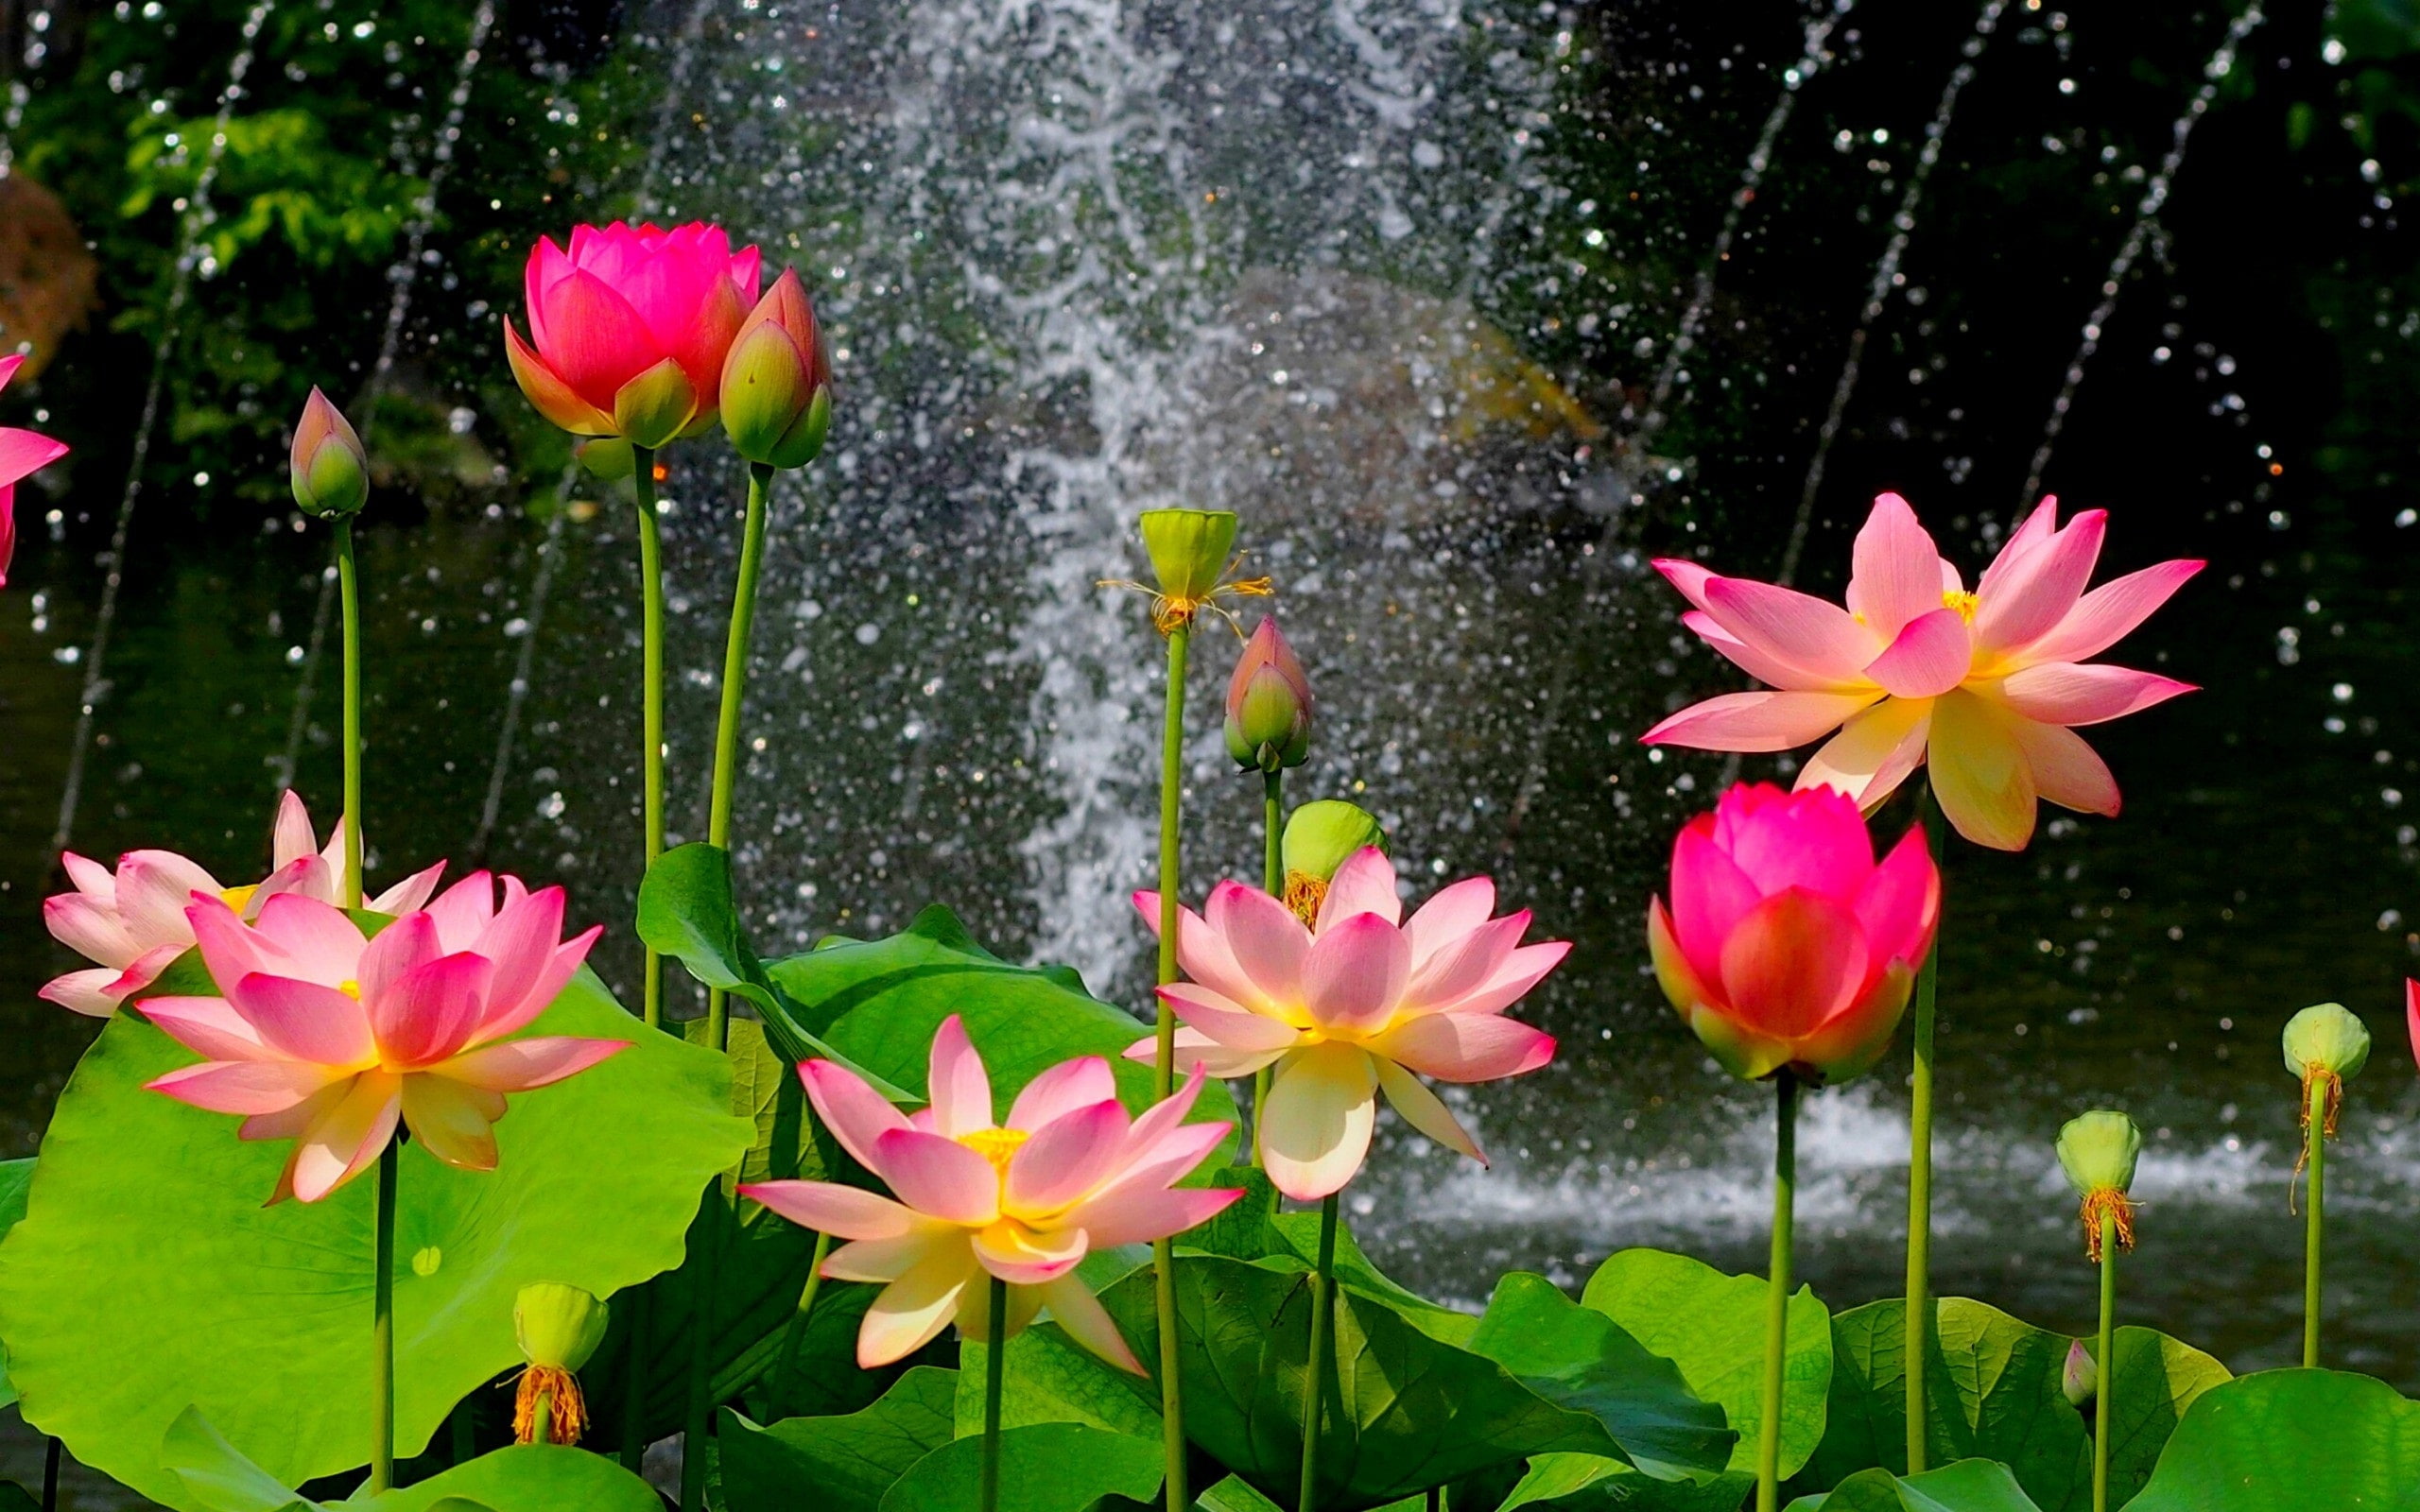 Beautiful lotus pond, pink flowers, green leaves